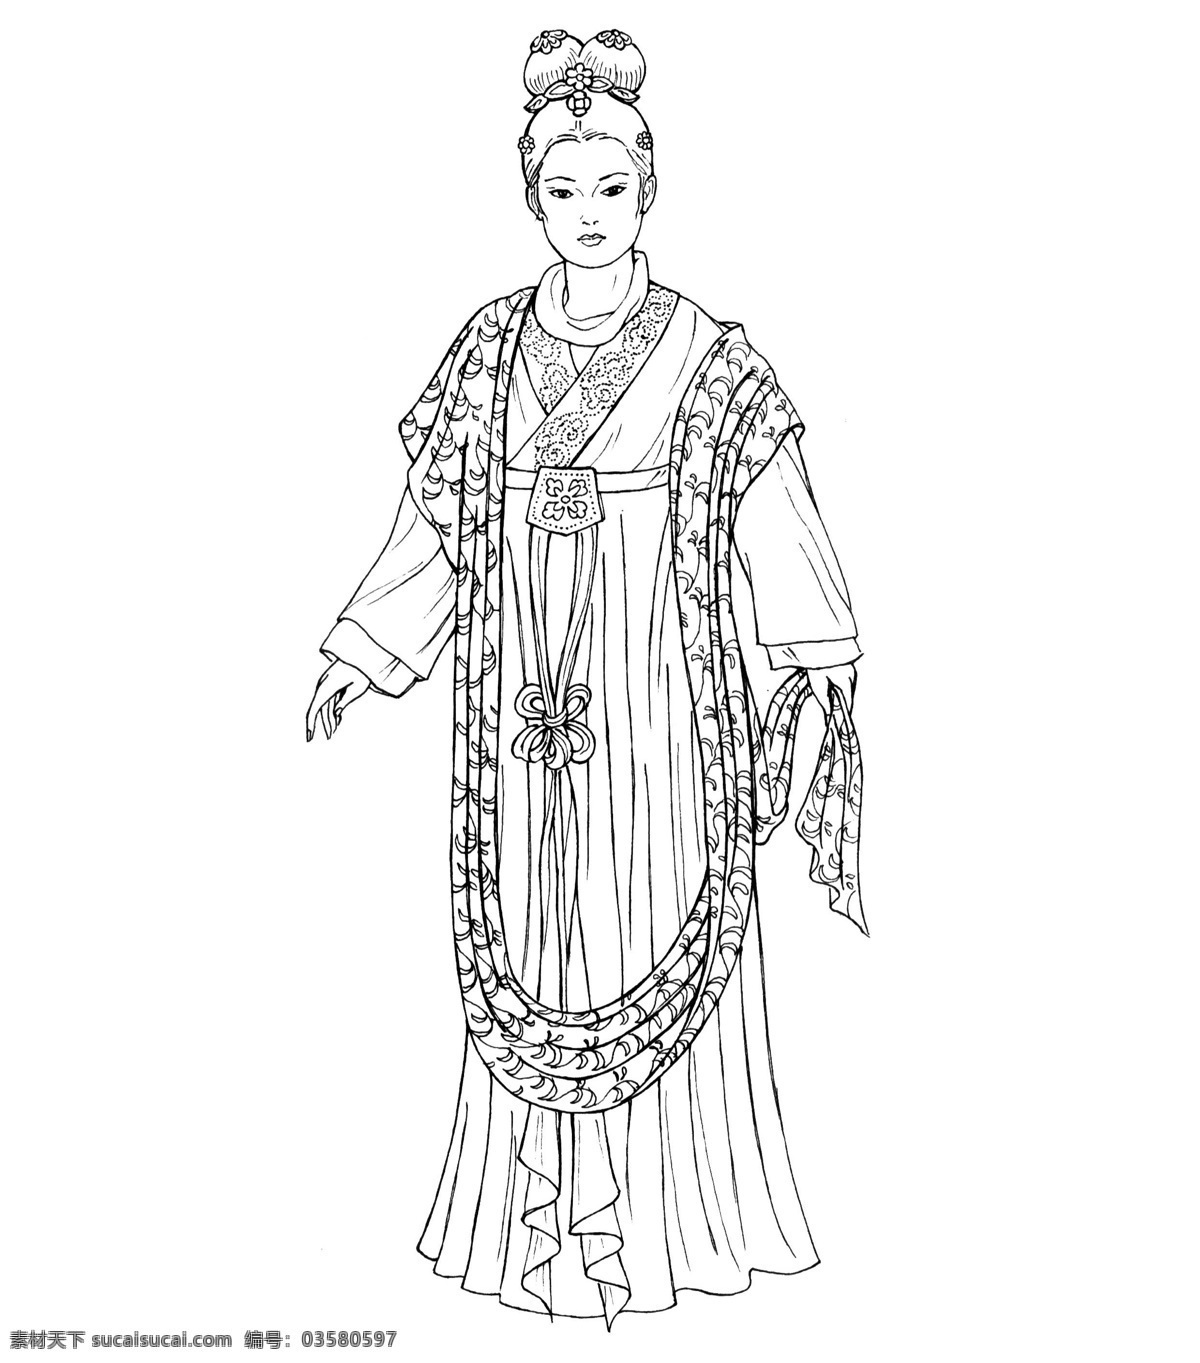 传统服饰 传统文化 服饰 服装设计 古装 民族 女性 宋代女性服饰 中国 唐朝 典型 代表服饰 汉代服饰 文化艺术 其他服装素材